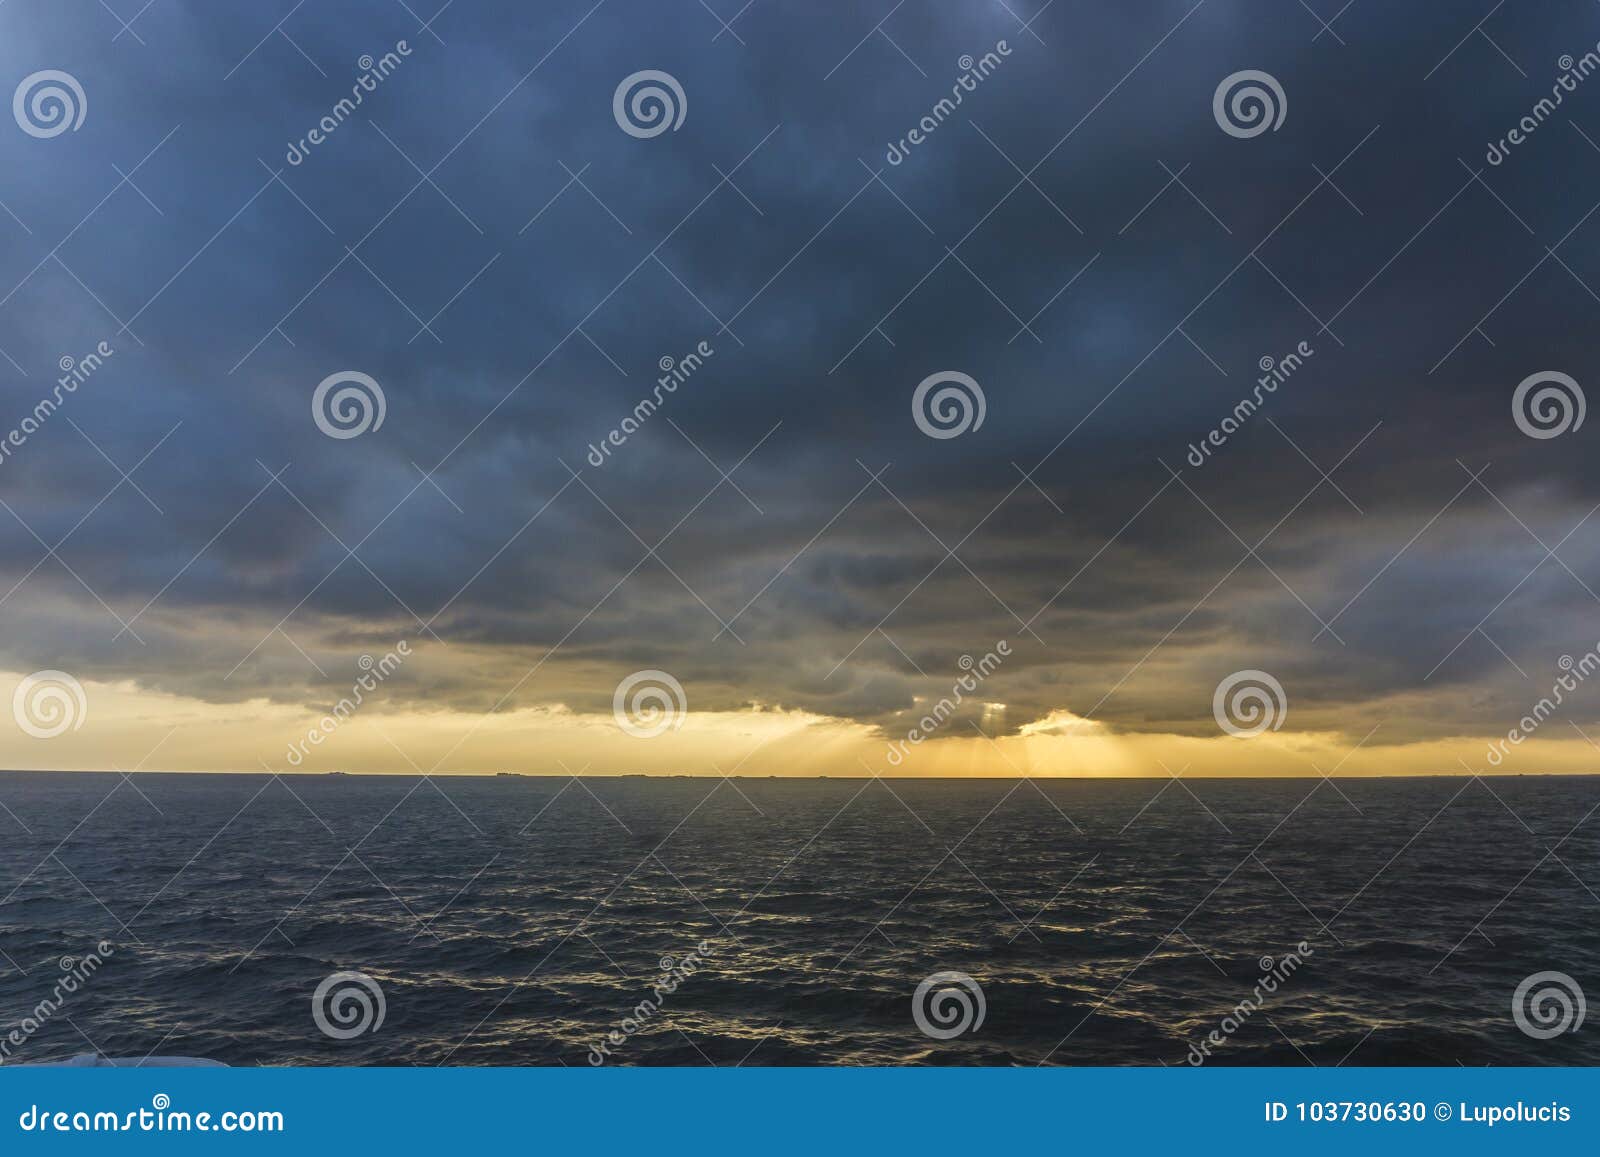 Δραματικό ηλιοβασίλεμα στη Βόρεια Θάλασσα με τις βαθιές νεφελώδεις ηλιαχτίδες ουρανού μέσω των σύννεφων και αντανακλάσεις στη θάλασσα